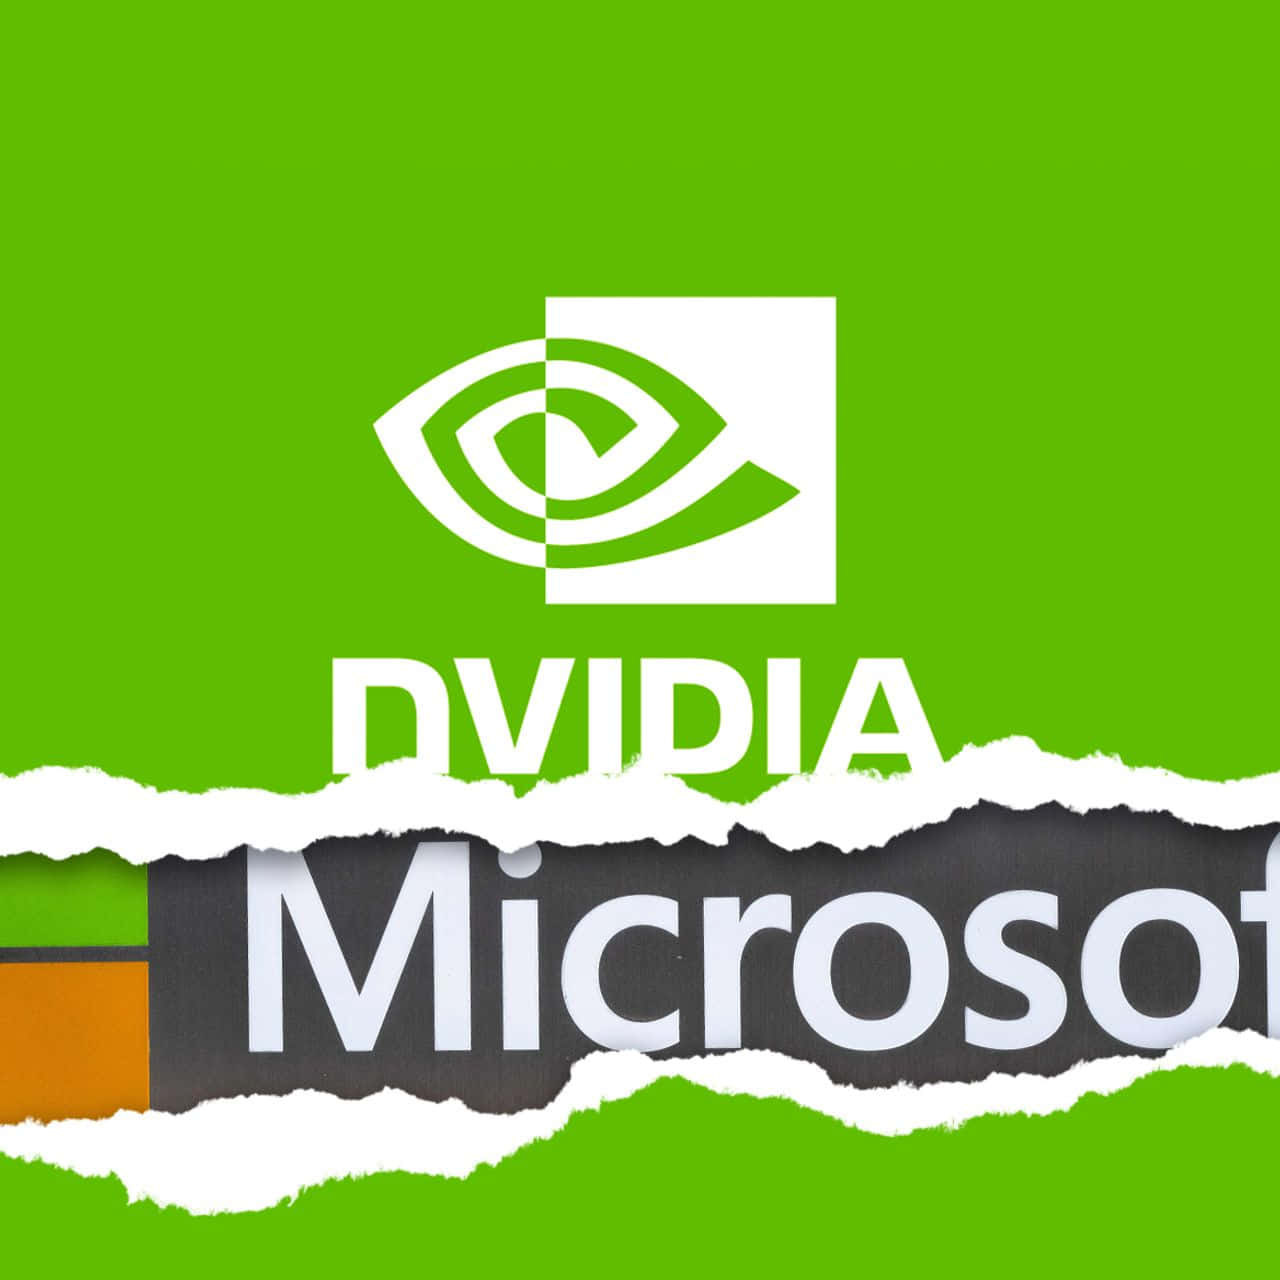 Eingrünes Zerrissenes Stück Papier Mit Den Worten Dvia Und Microsoft